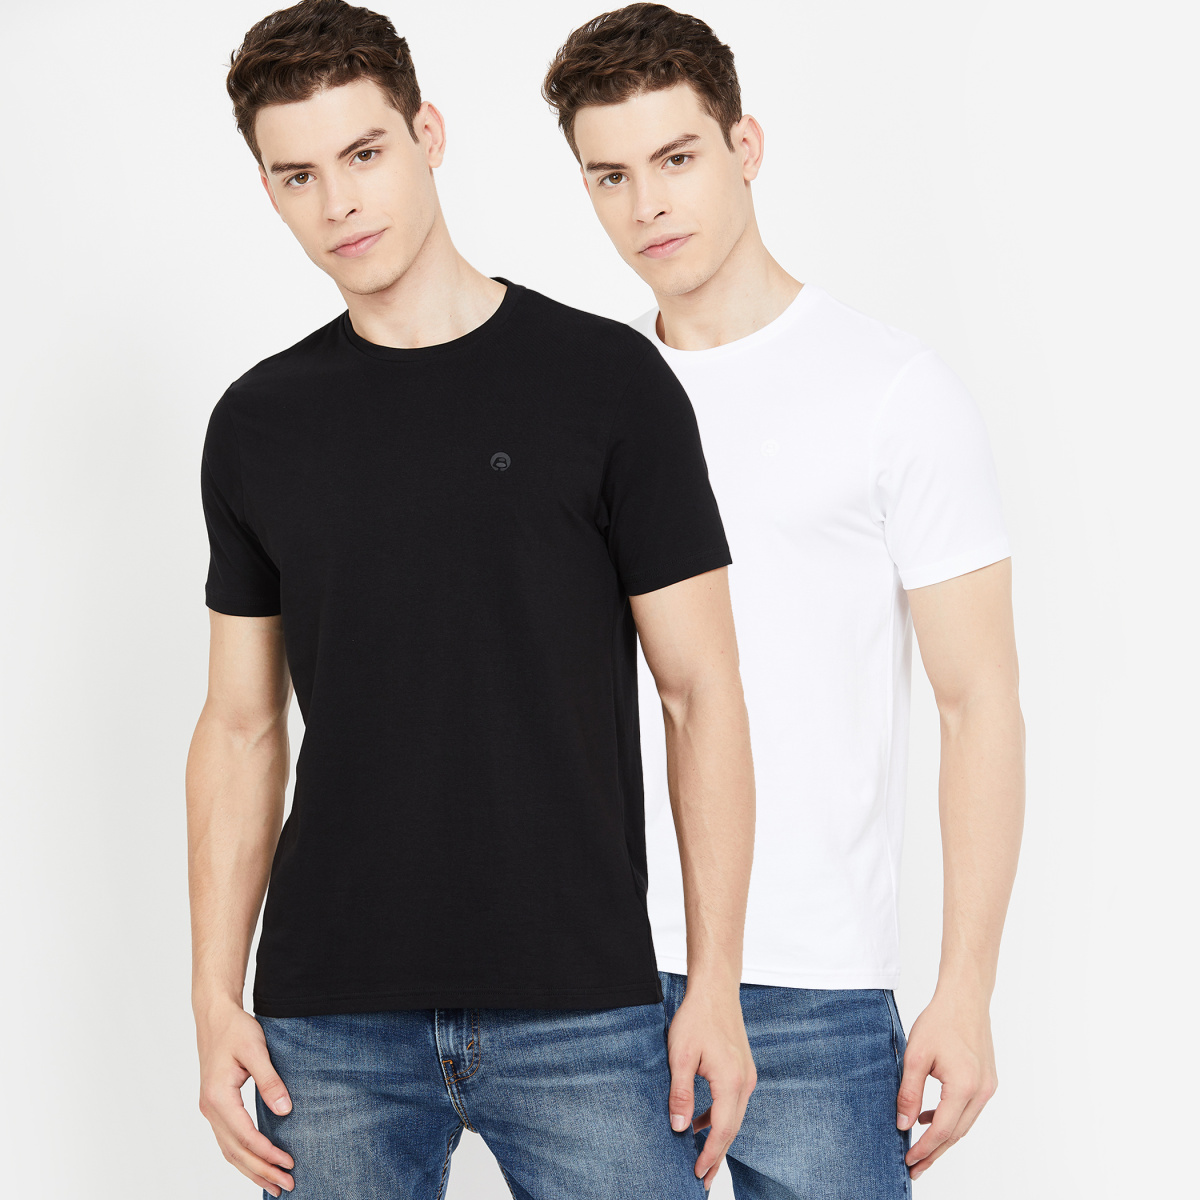 BOSSINI Solid Regular Fit T-shirt - Set of 2 Pcs